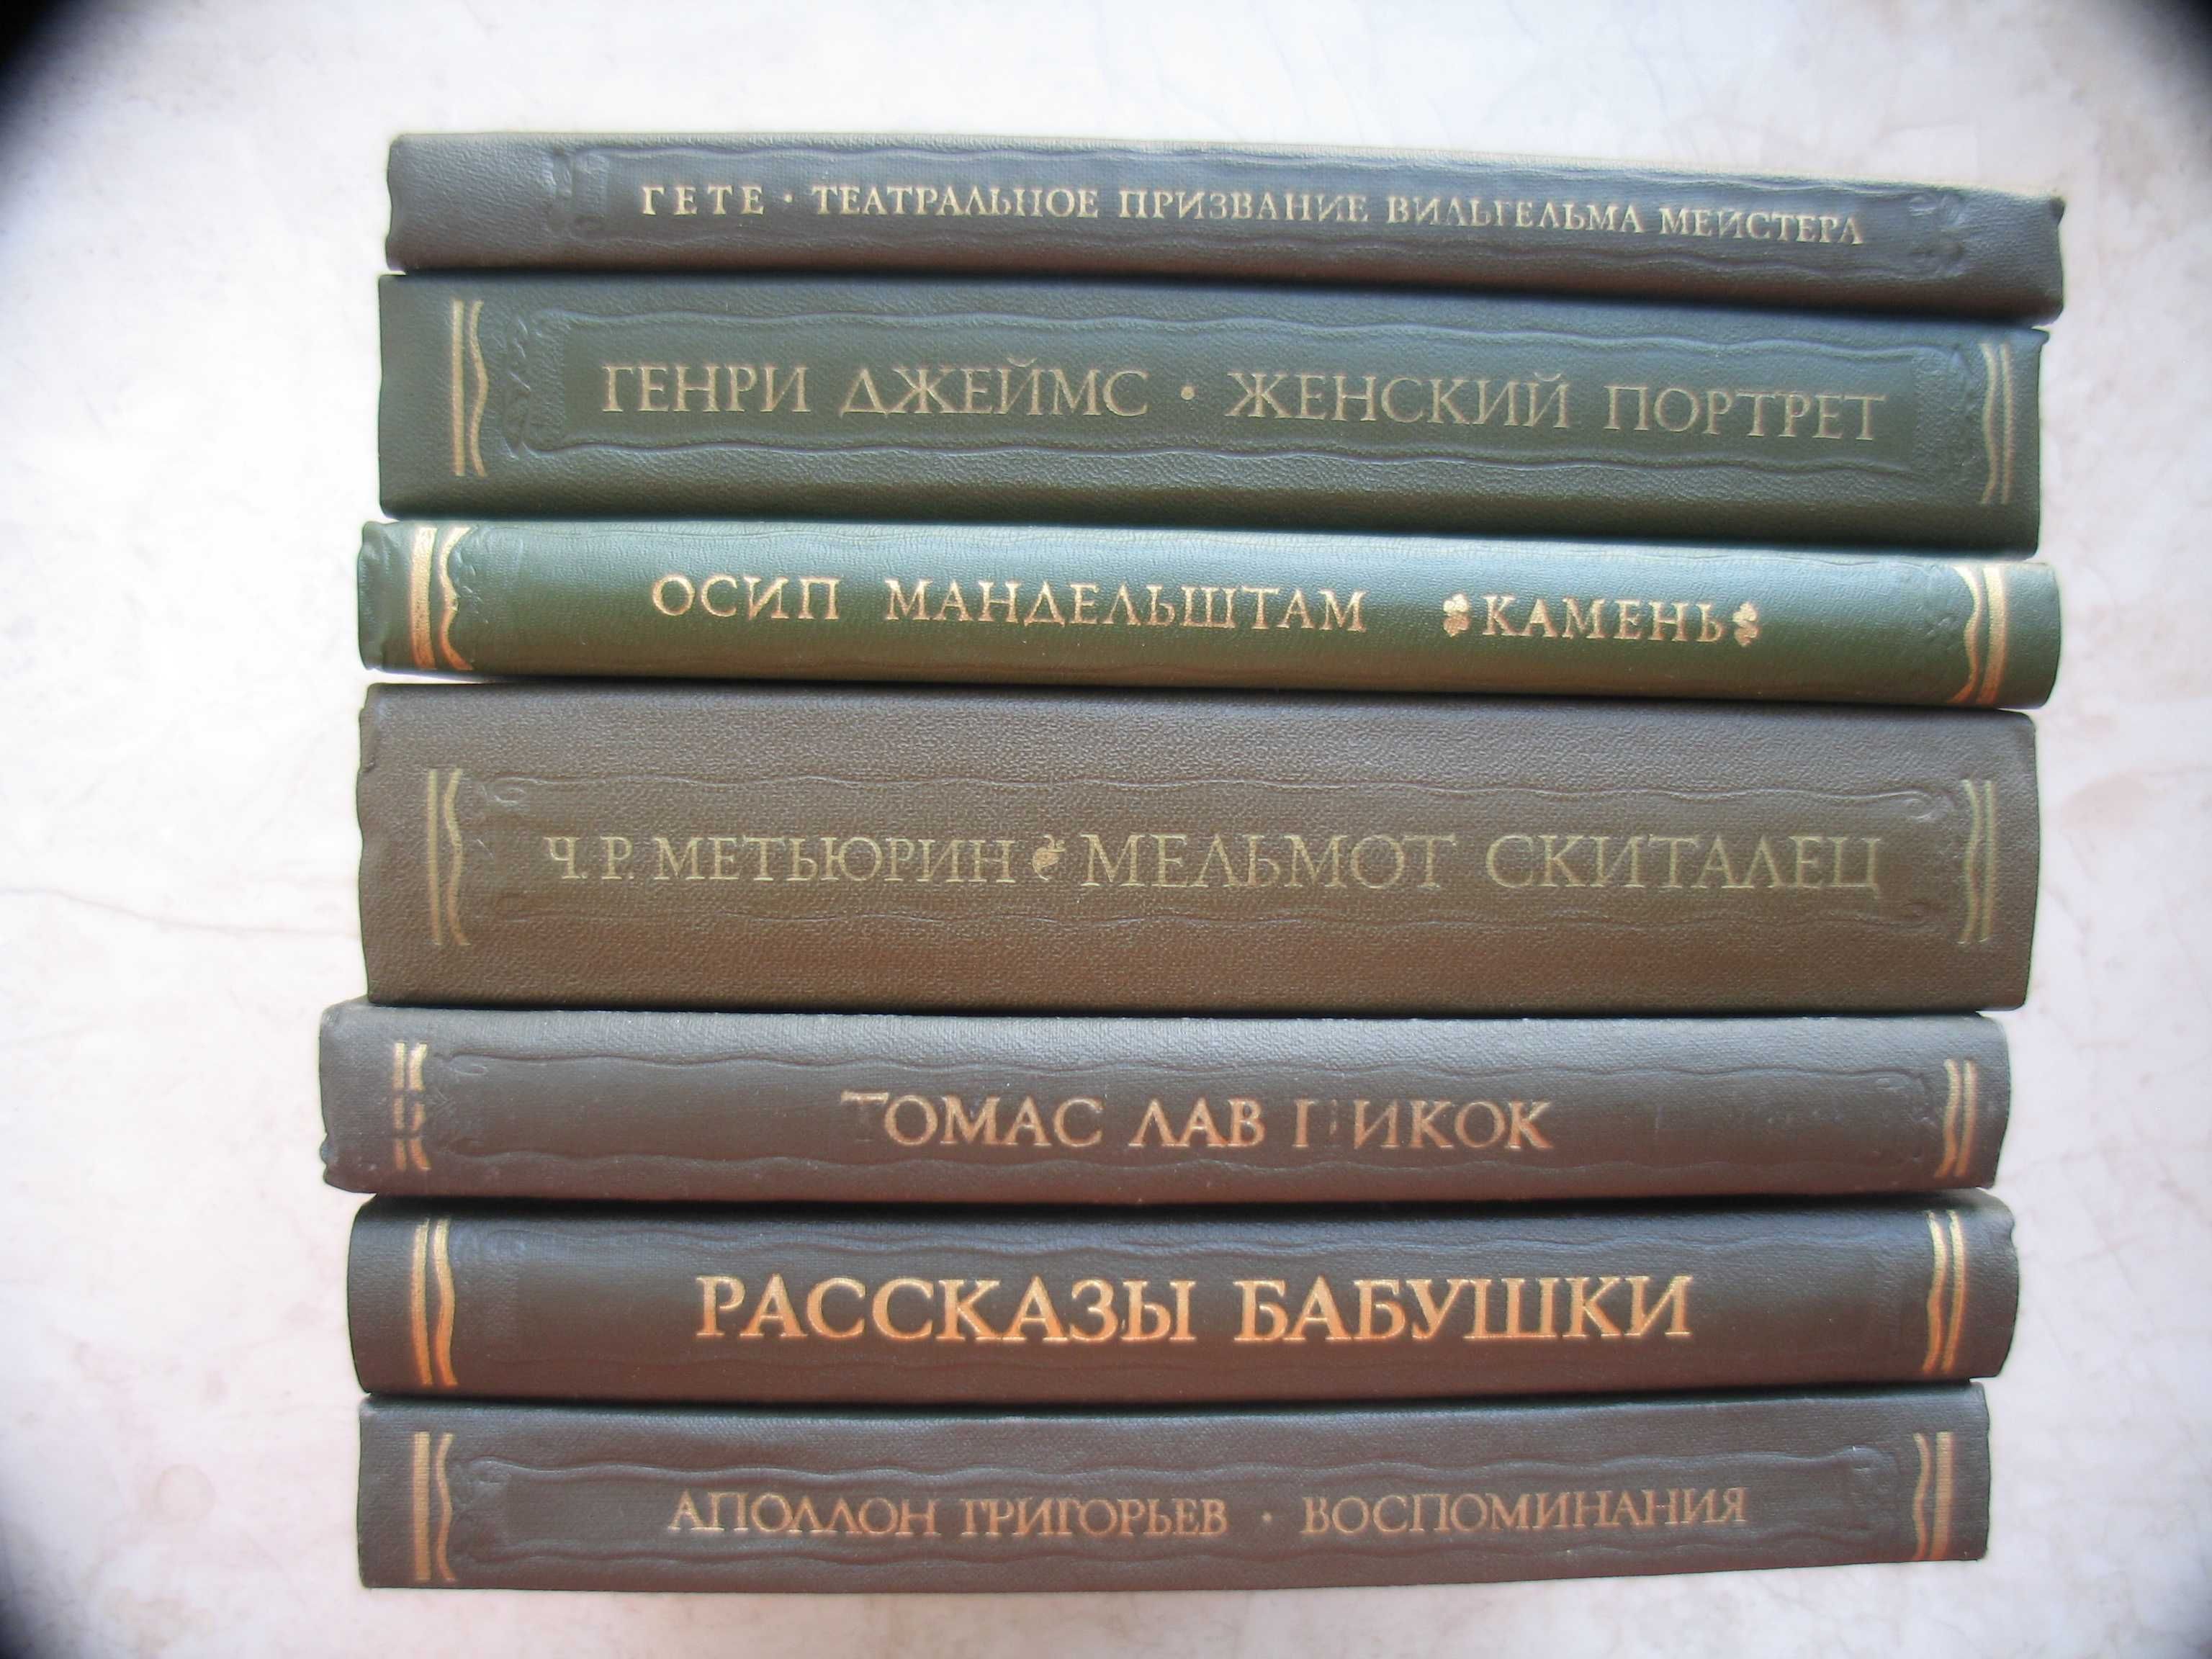 Серия Литературные Памятники, большой формат 18 см * 22 см, 26 шт.